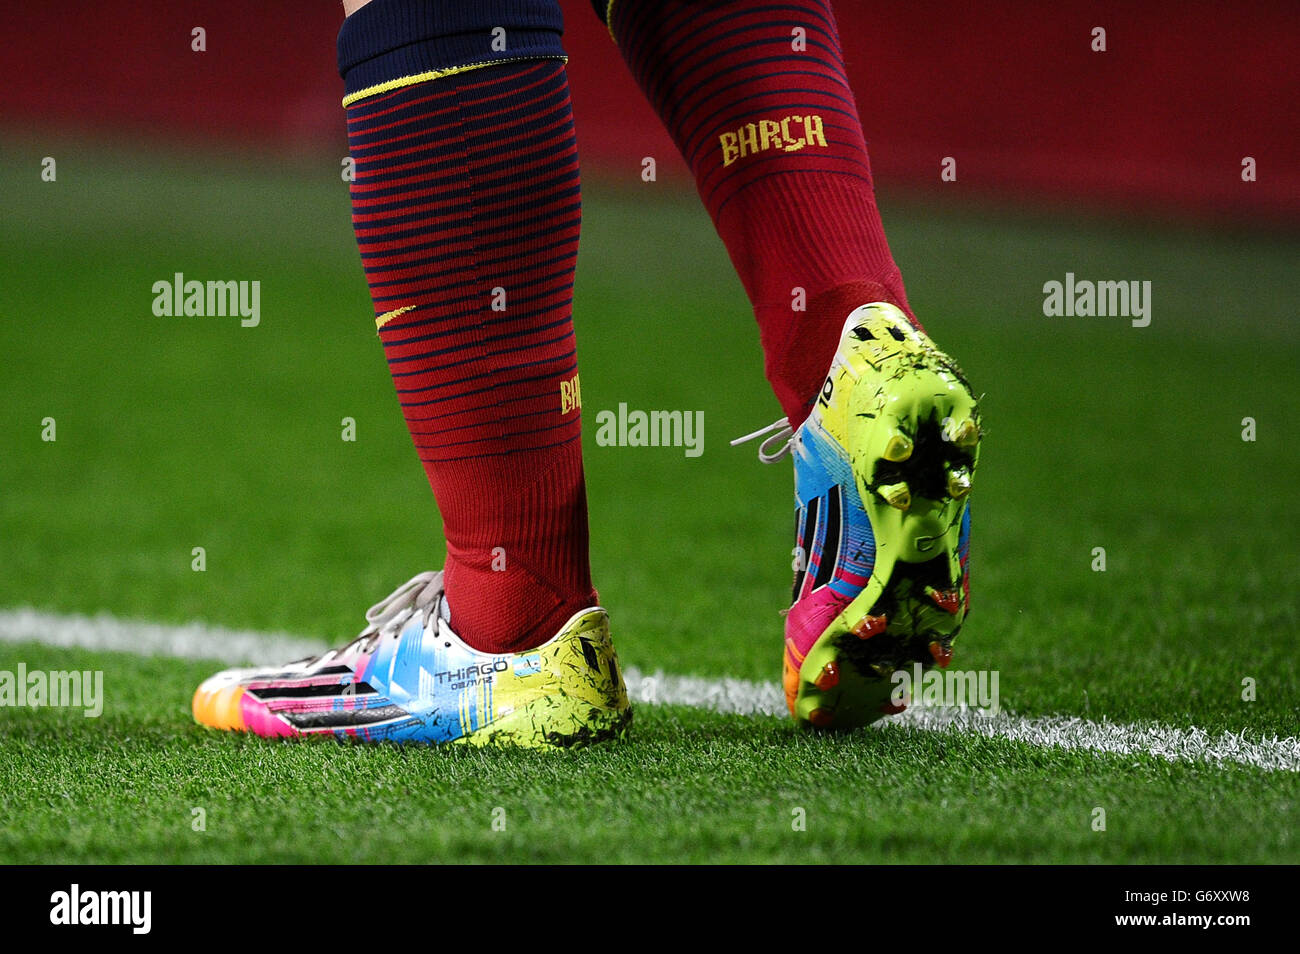 Dettaglio delle scarpe da calcio Lionel messi di Barcellona con il nome e  la data di nascita del figlio Thiago cucito in loro Foto stock - Alamy